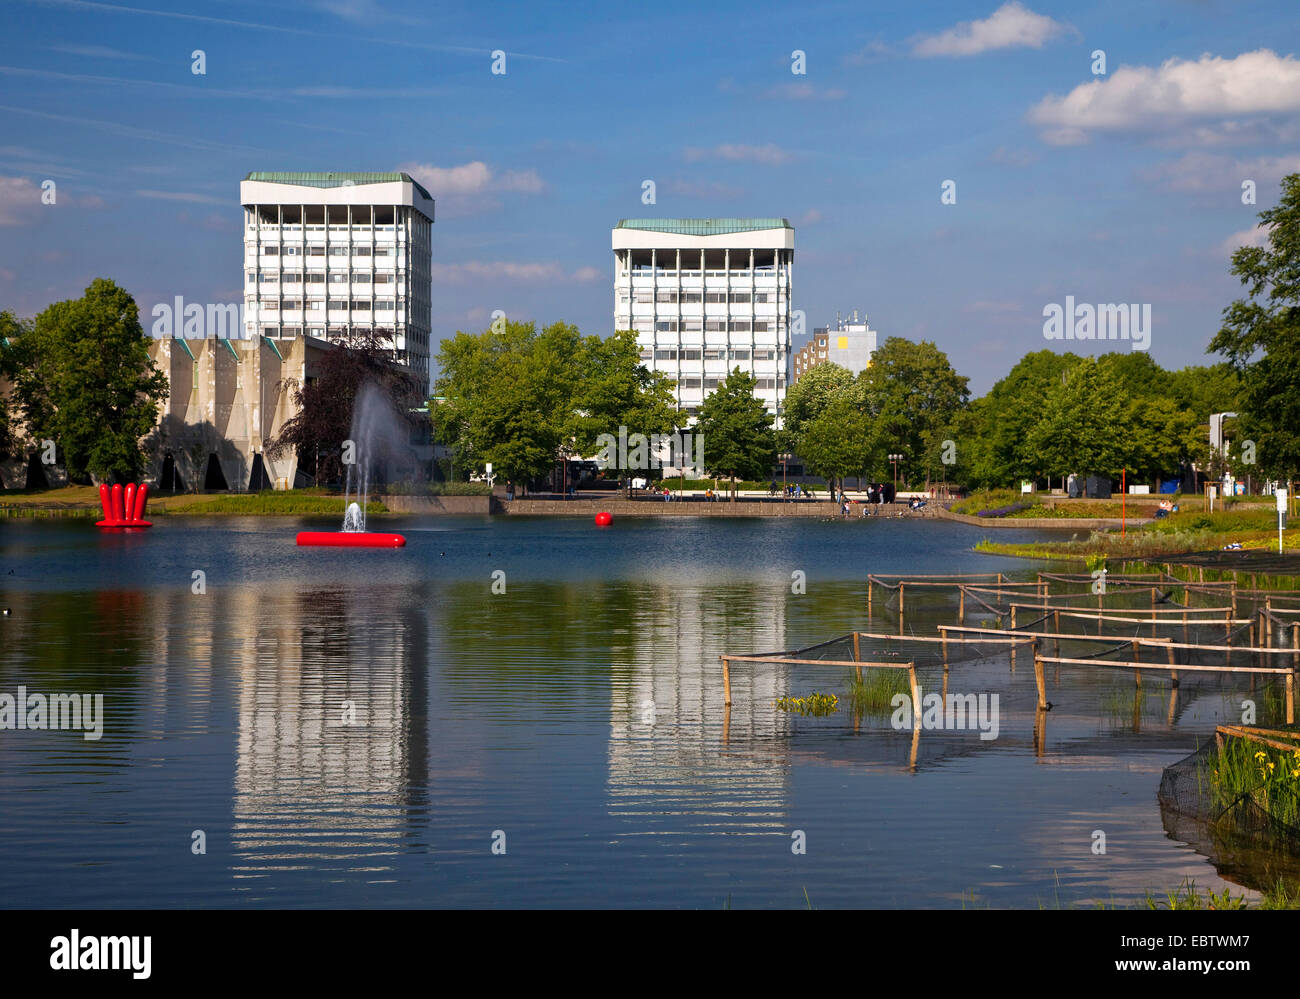 Deux jeunes gens assis sur un banc au lac de la ville avec l'hôtel de ville de deux tours à l'arrière-plan reflétant dans l'eau, de l'Allemagne, en Rhénanie du Nord-Westphalie, région de la Ruhr, la Marne Banque D'Images